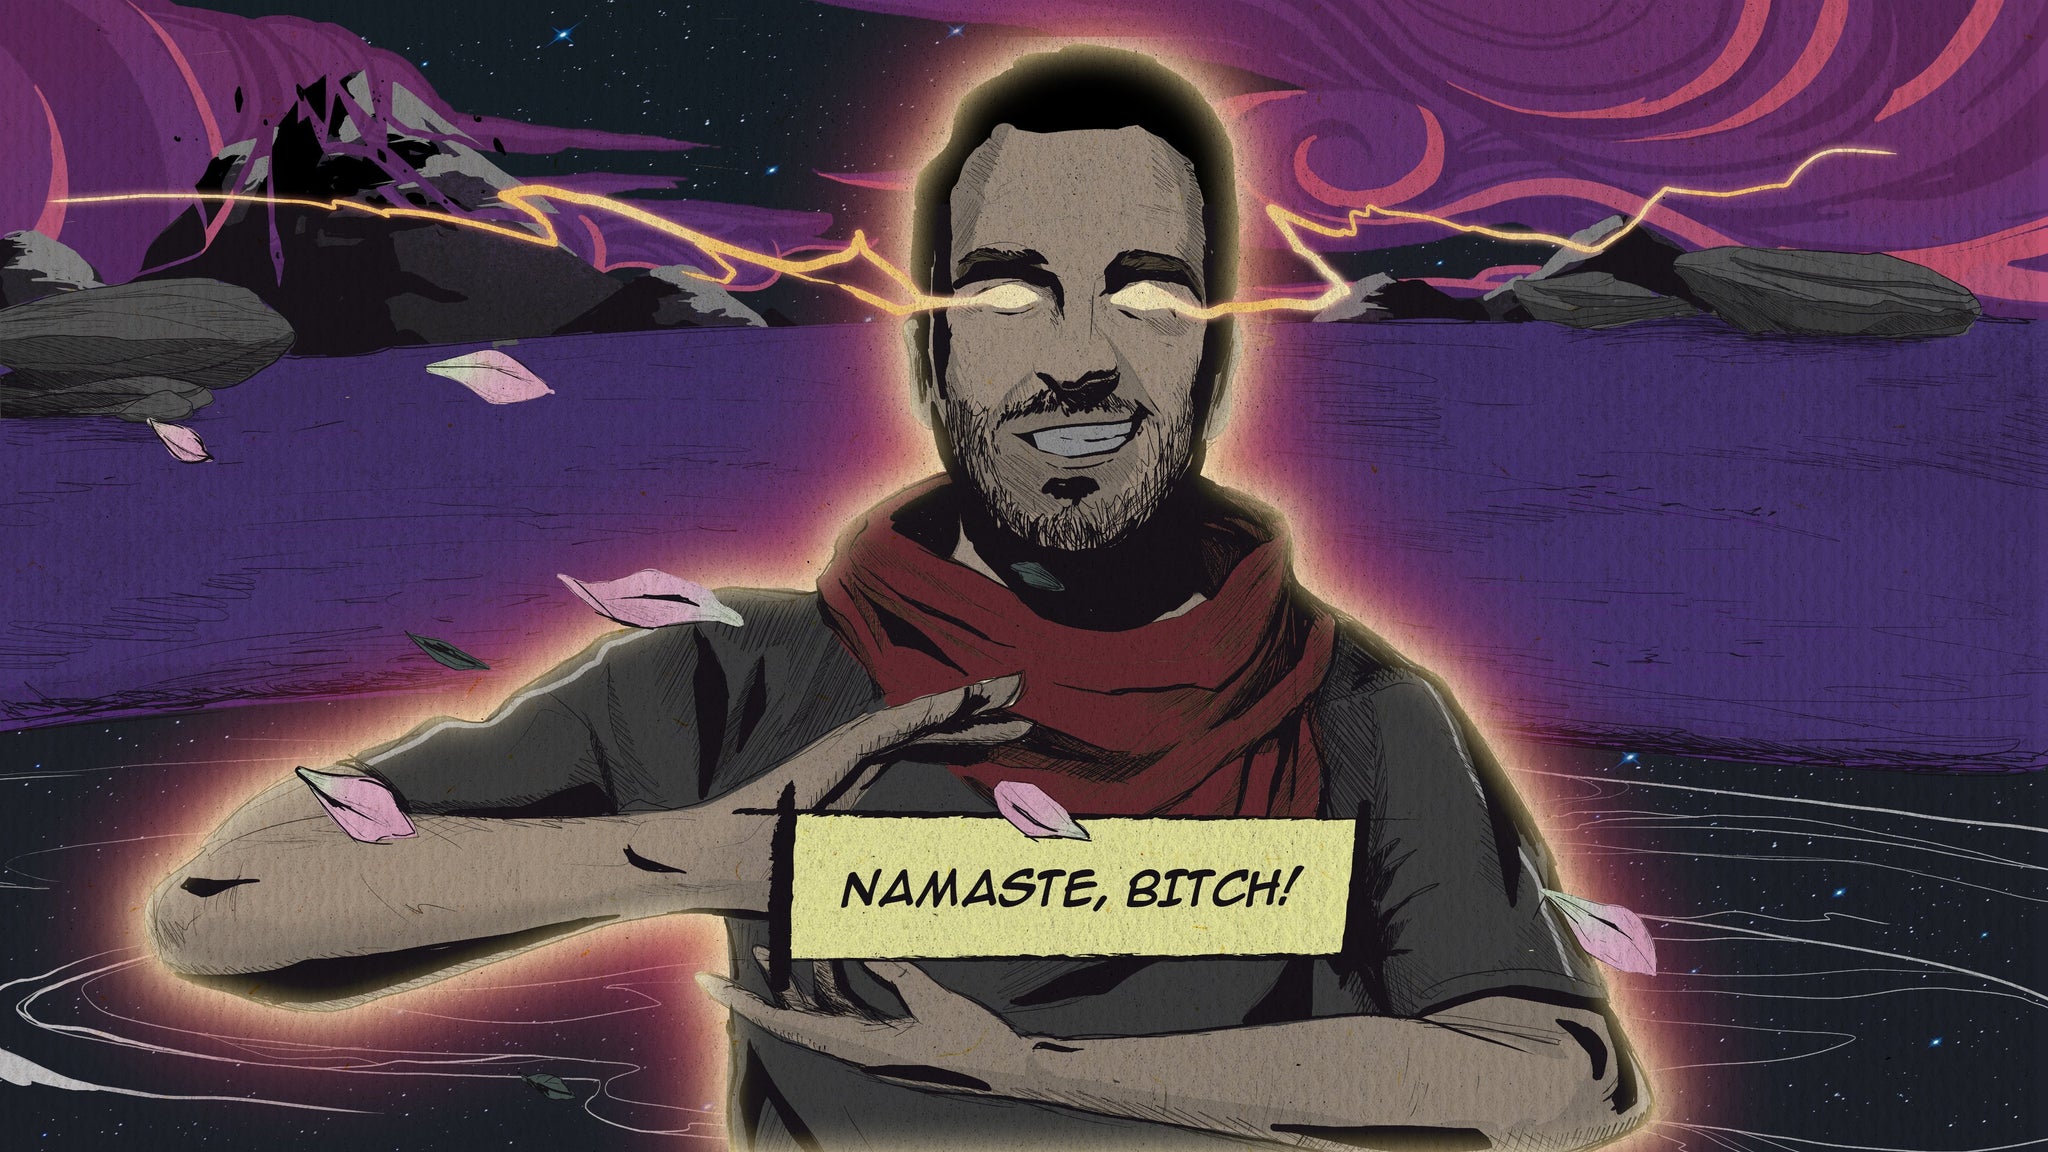 Carlos - Namaste, Bitch!